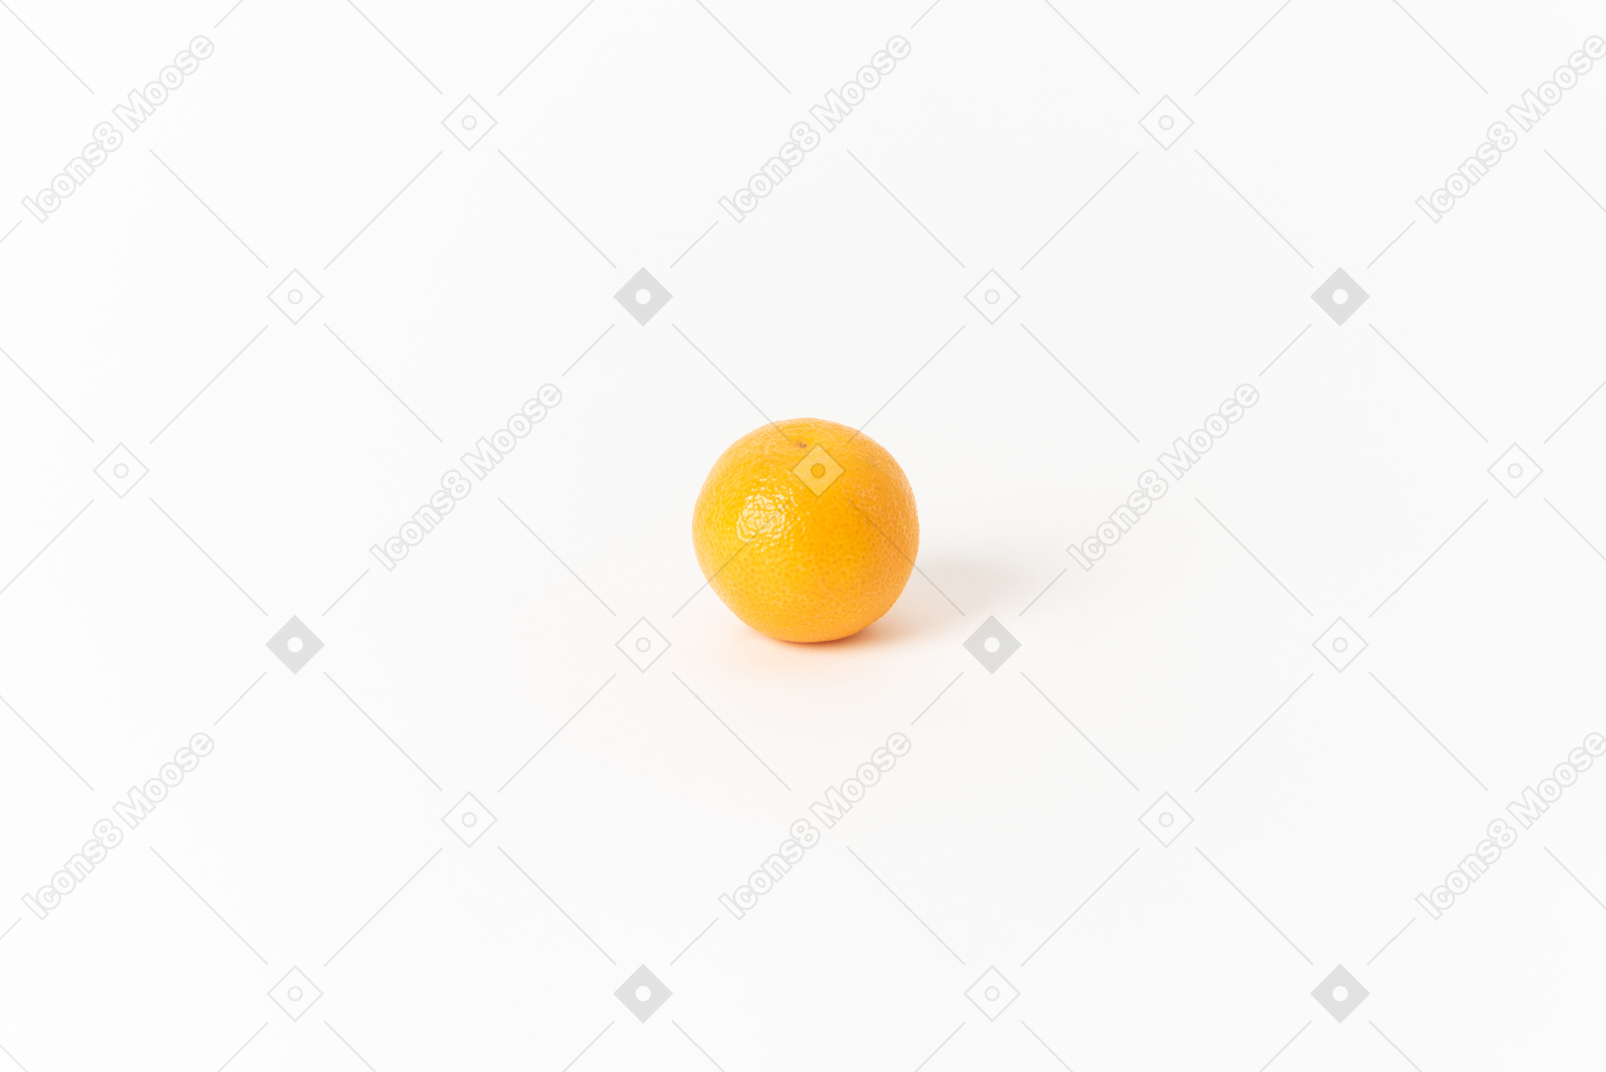 Апельсин - один из самых популярных фруктов в мире